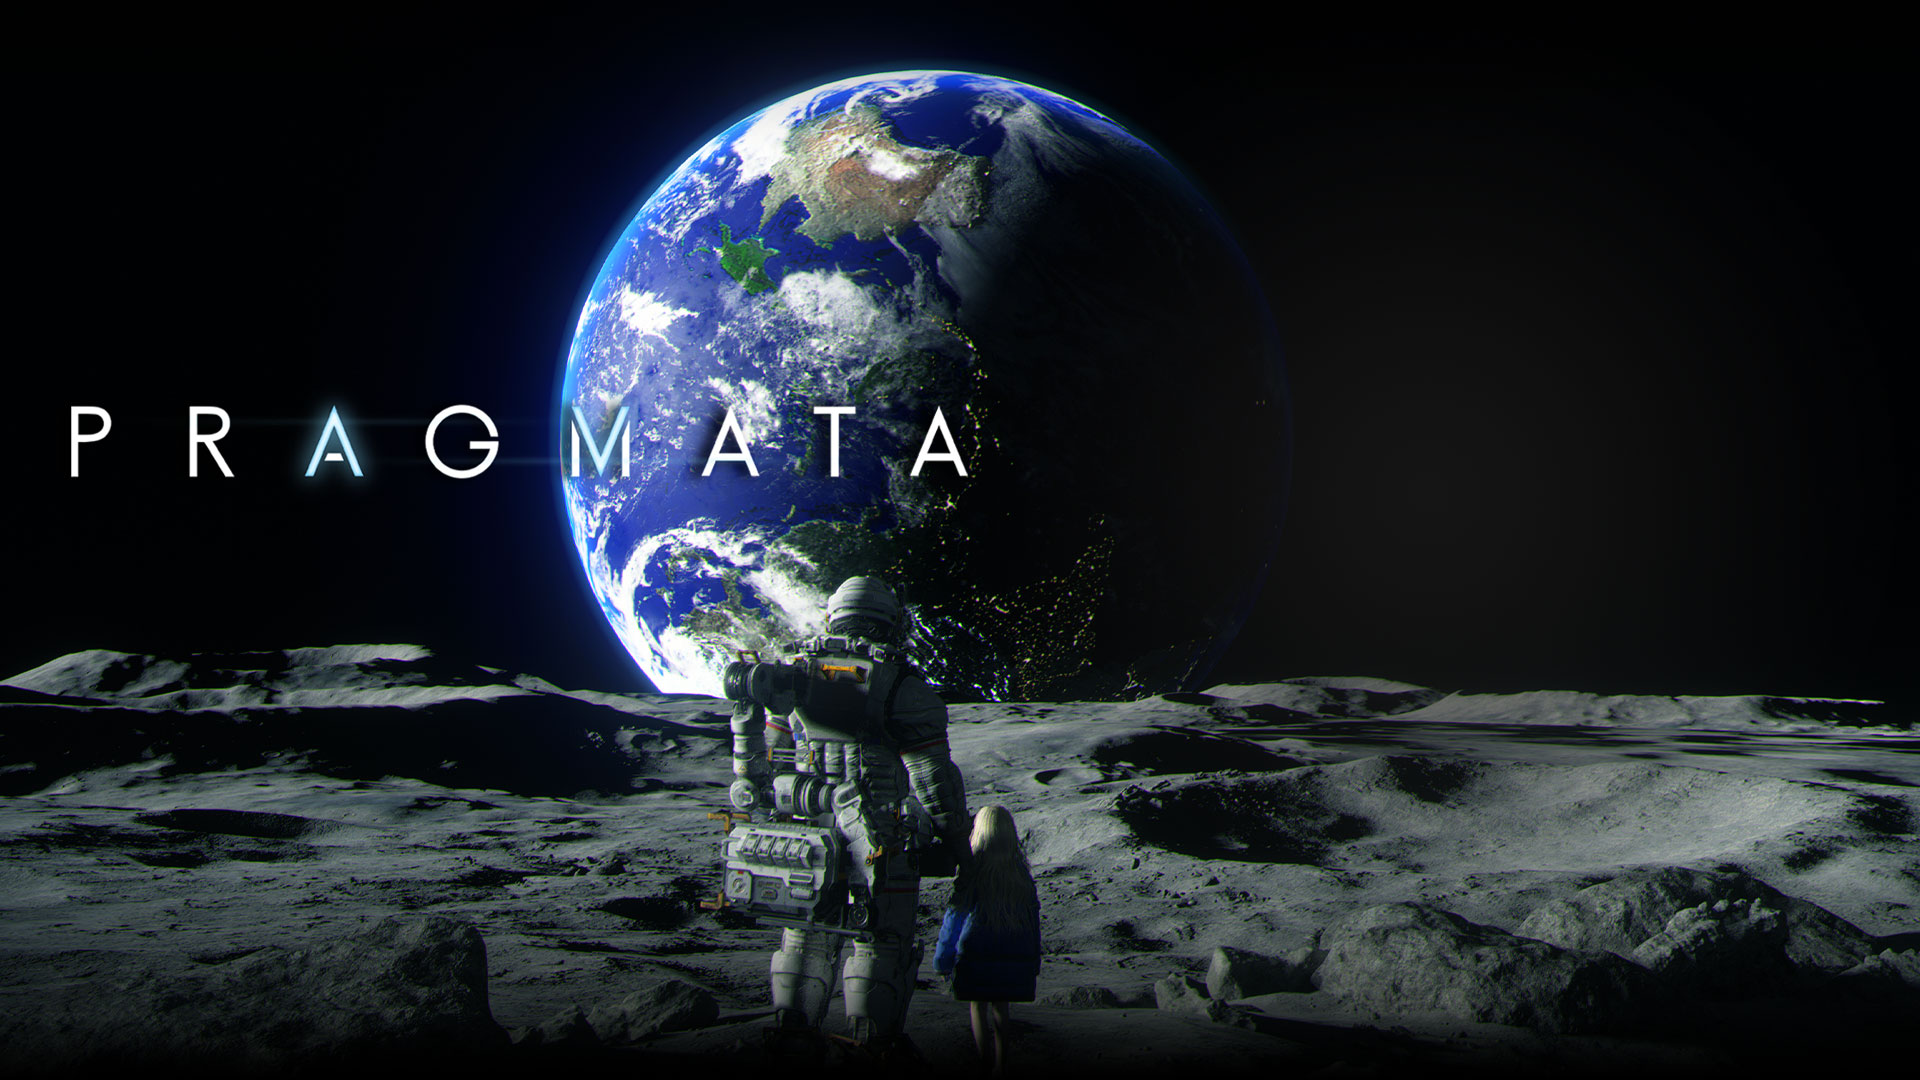 「プラグマタ」、月に立って地球を眺める宇宙飛行士と少女